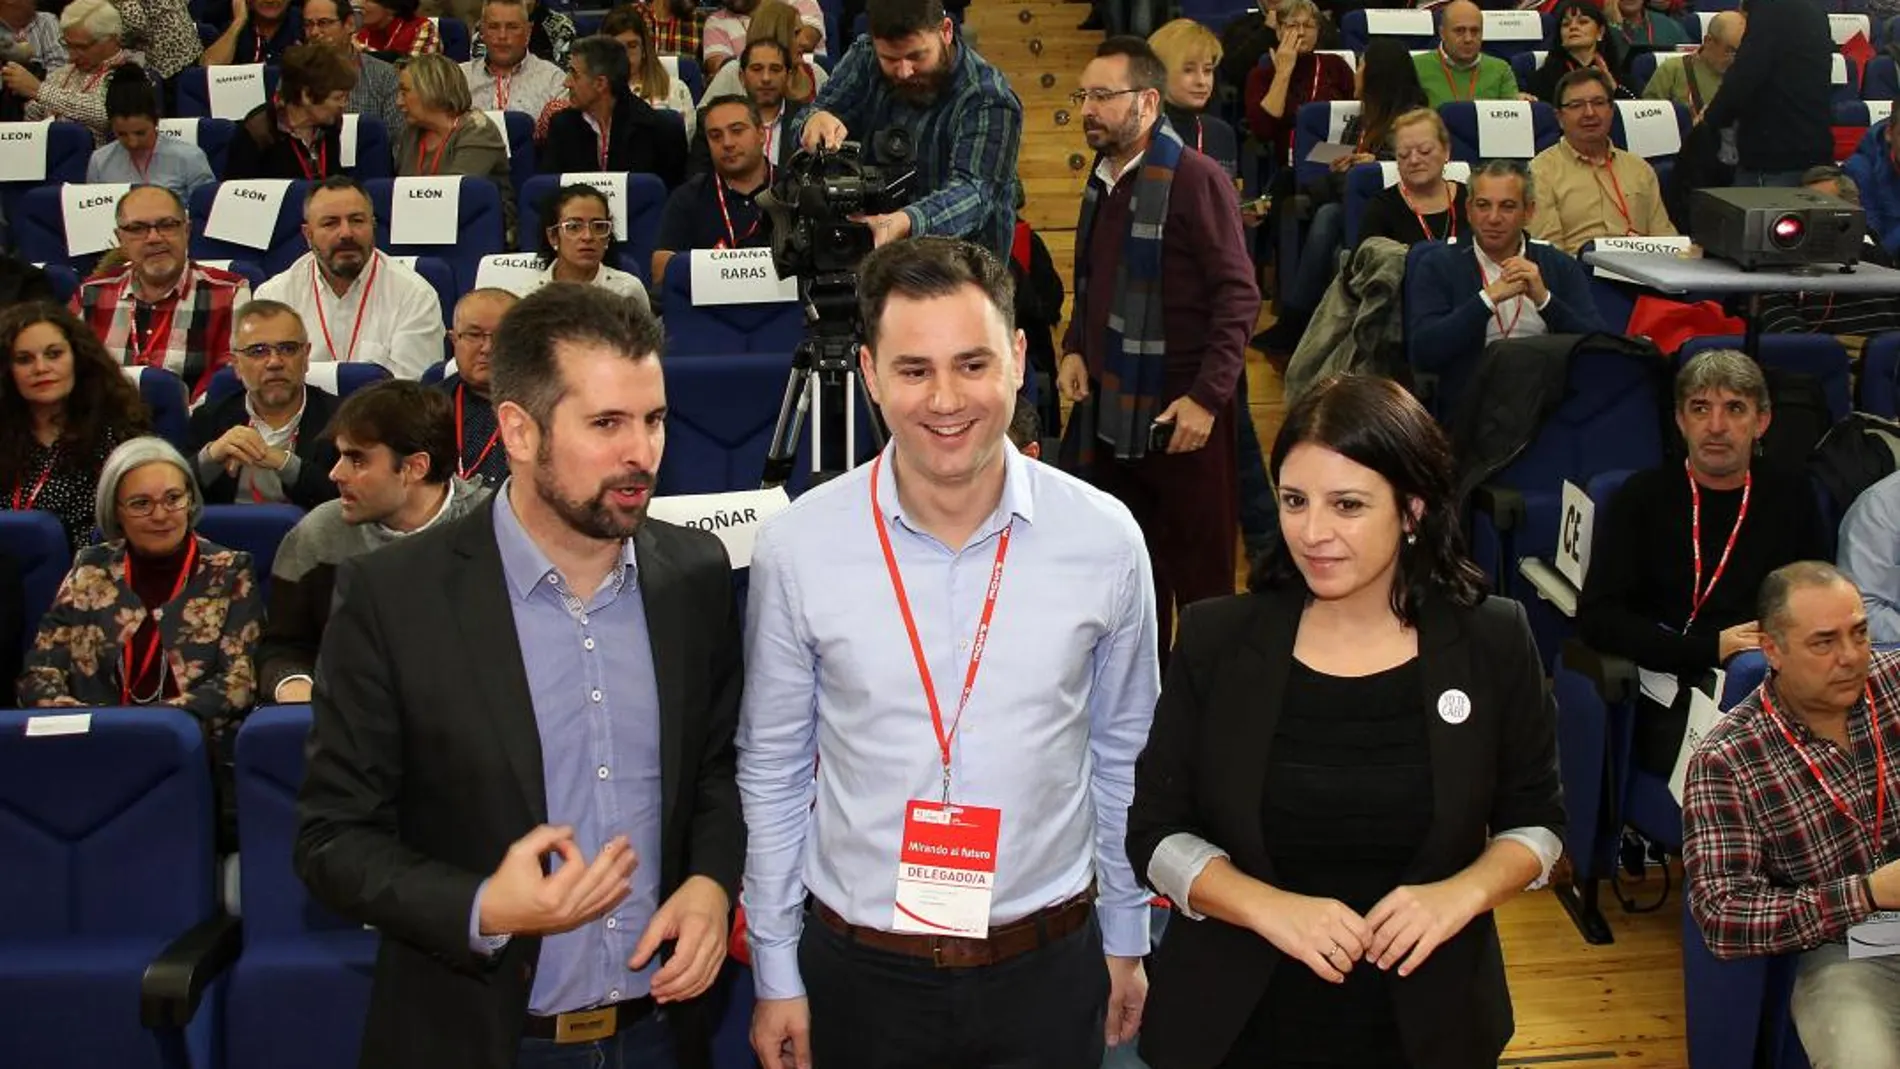 Luis Tudanca, Javier Cendón y Adriana Lastra, durante el Congreso Provincial del PSOE de León